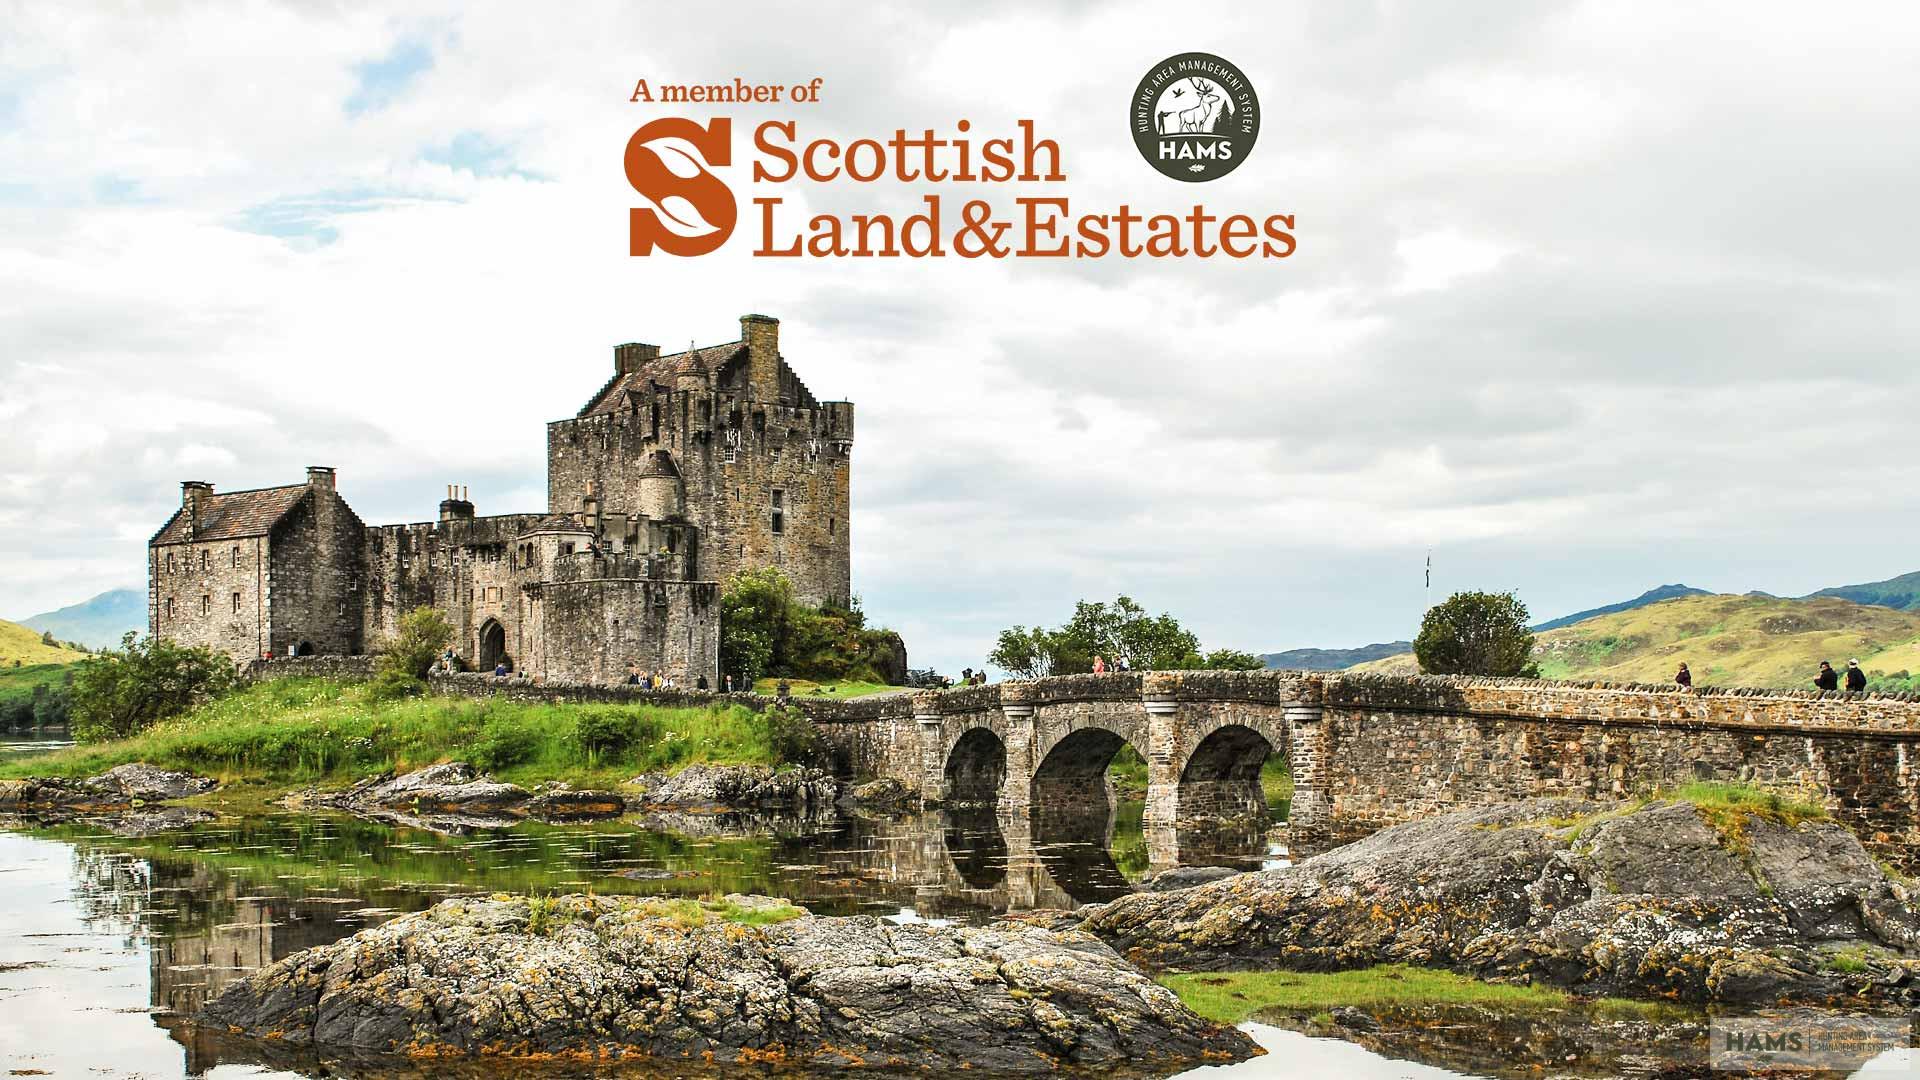 A Scottish Land & Estates és a HAMS kereskedelmi partnerségre lépett